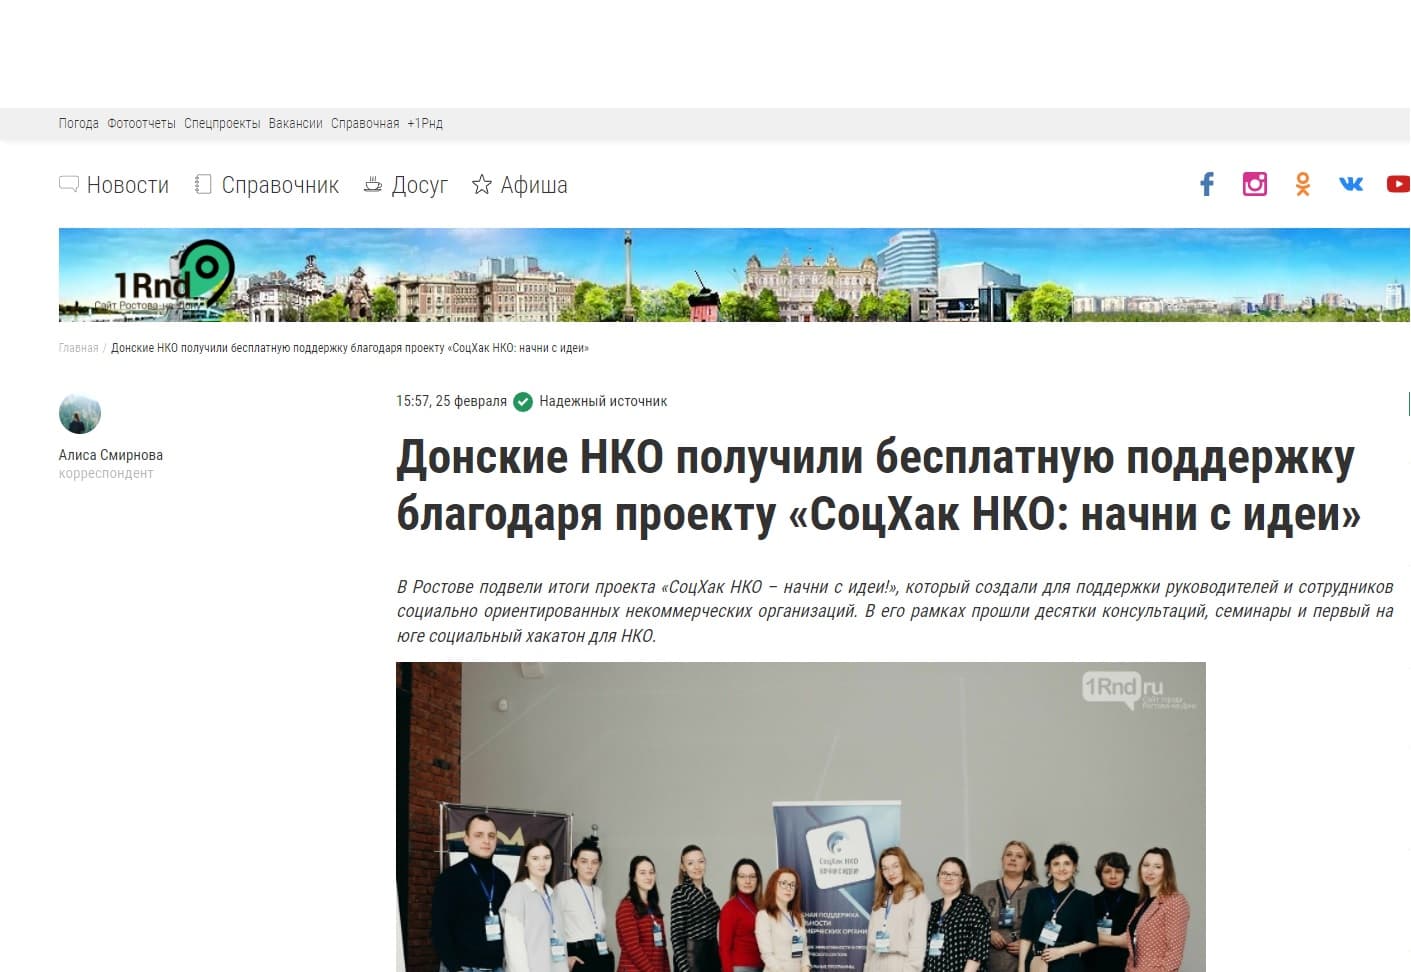 Донские НКО получили бесплатную поддержку благодаря проекту «СоцХак НКО: начни с идеи»